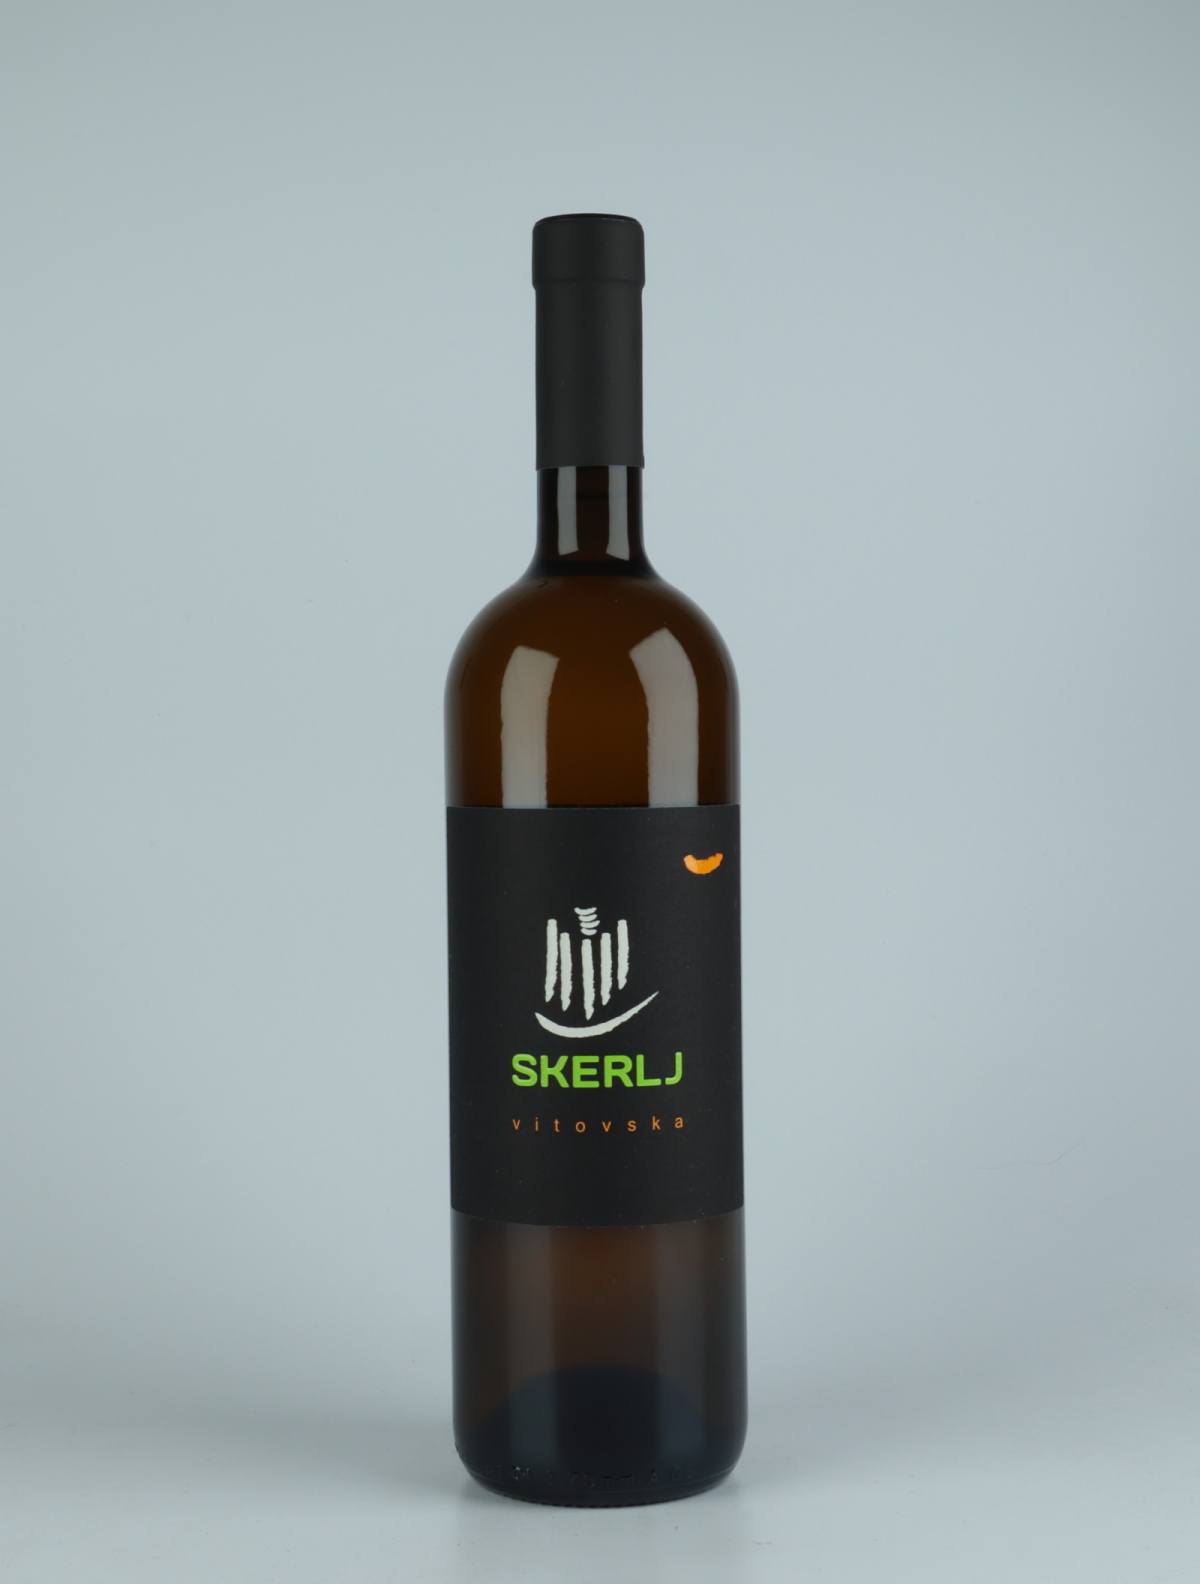 A bottle 2019 Vitovska Orange wine from Skerlj, Friuli in Italy